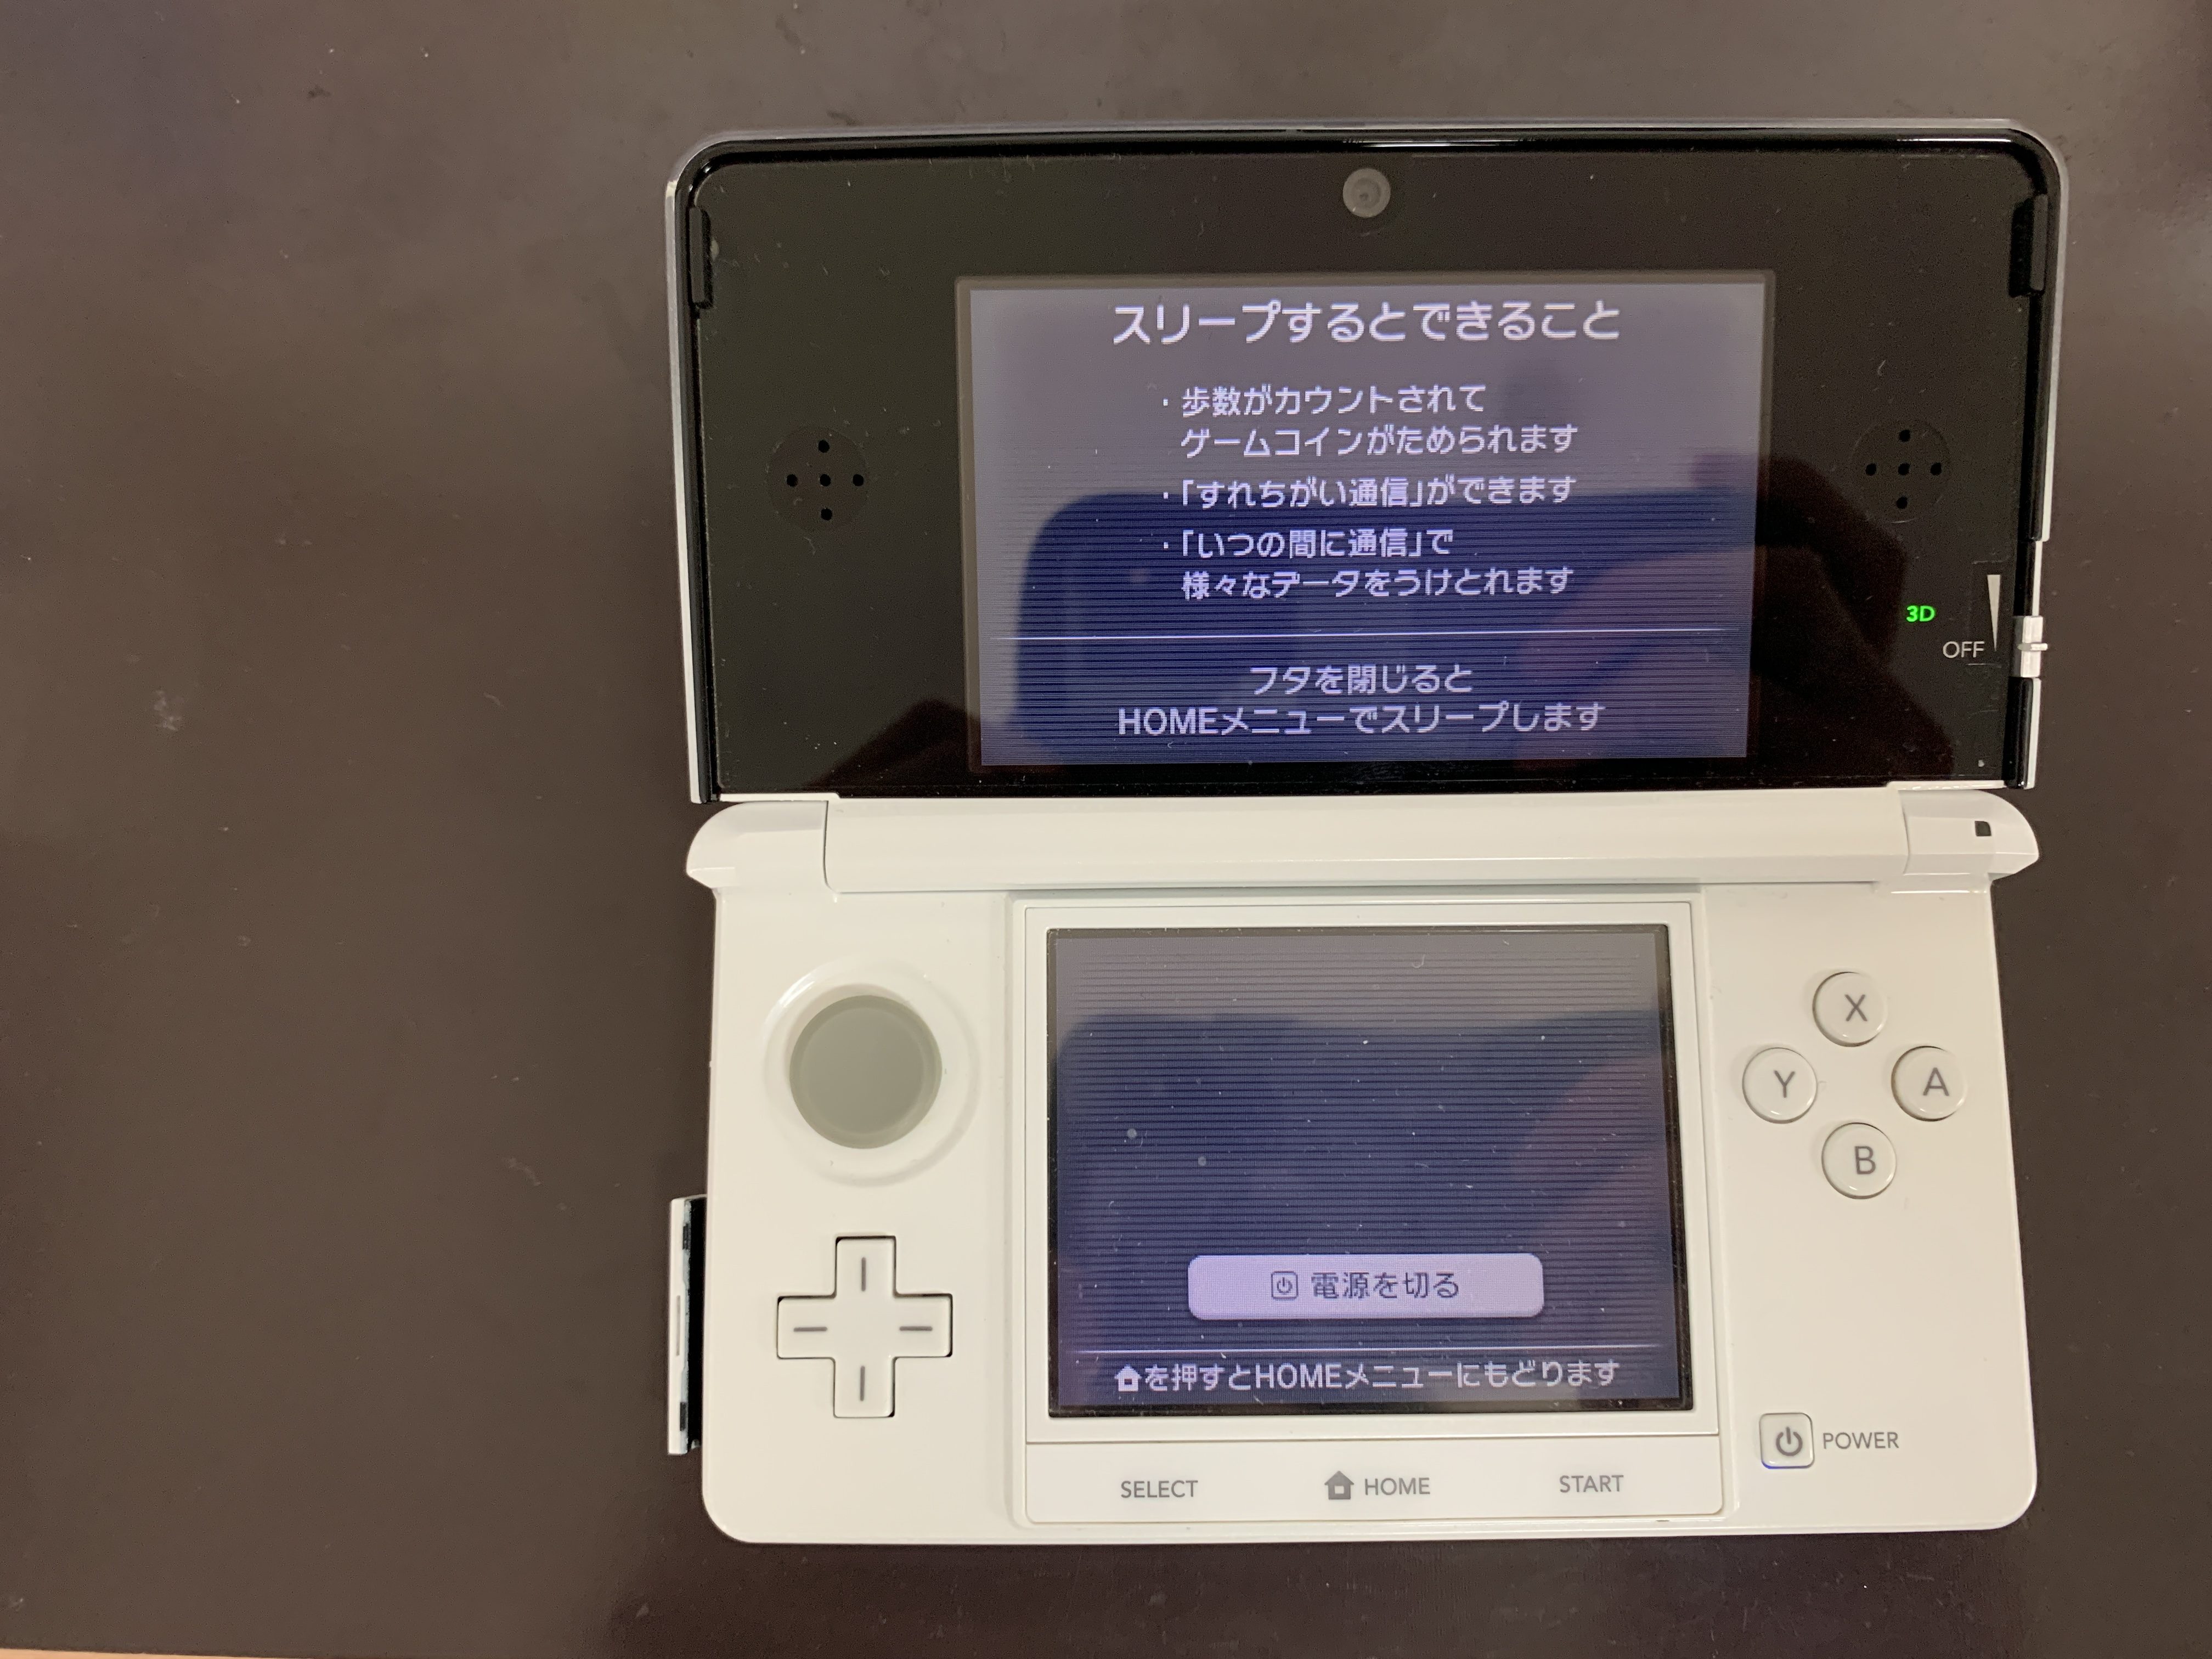 3dsのrボタンの効きが悪いと3dsrボタンケーブル交換修理のご依頼をいただきました 7分で修理完了 データもそのままでお返しできました Switch Nintendo3ds Psp 修理のゲームホスピタル Switch Nintendo3ds ニンテンドーds Psp 修理